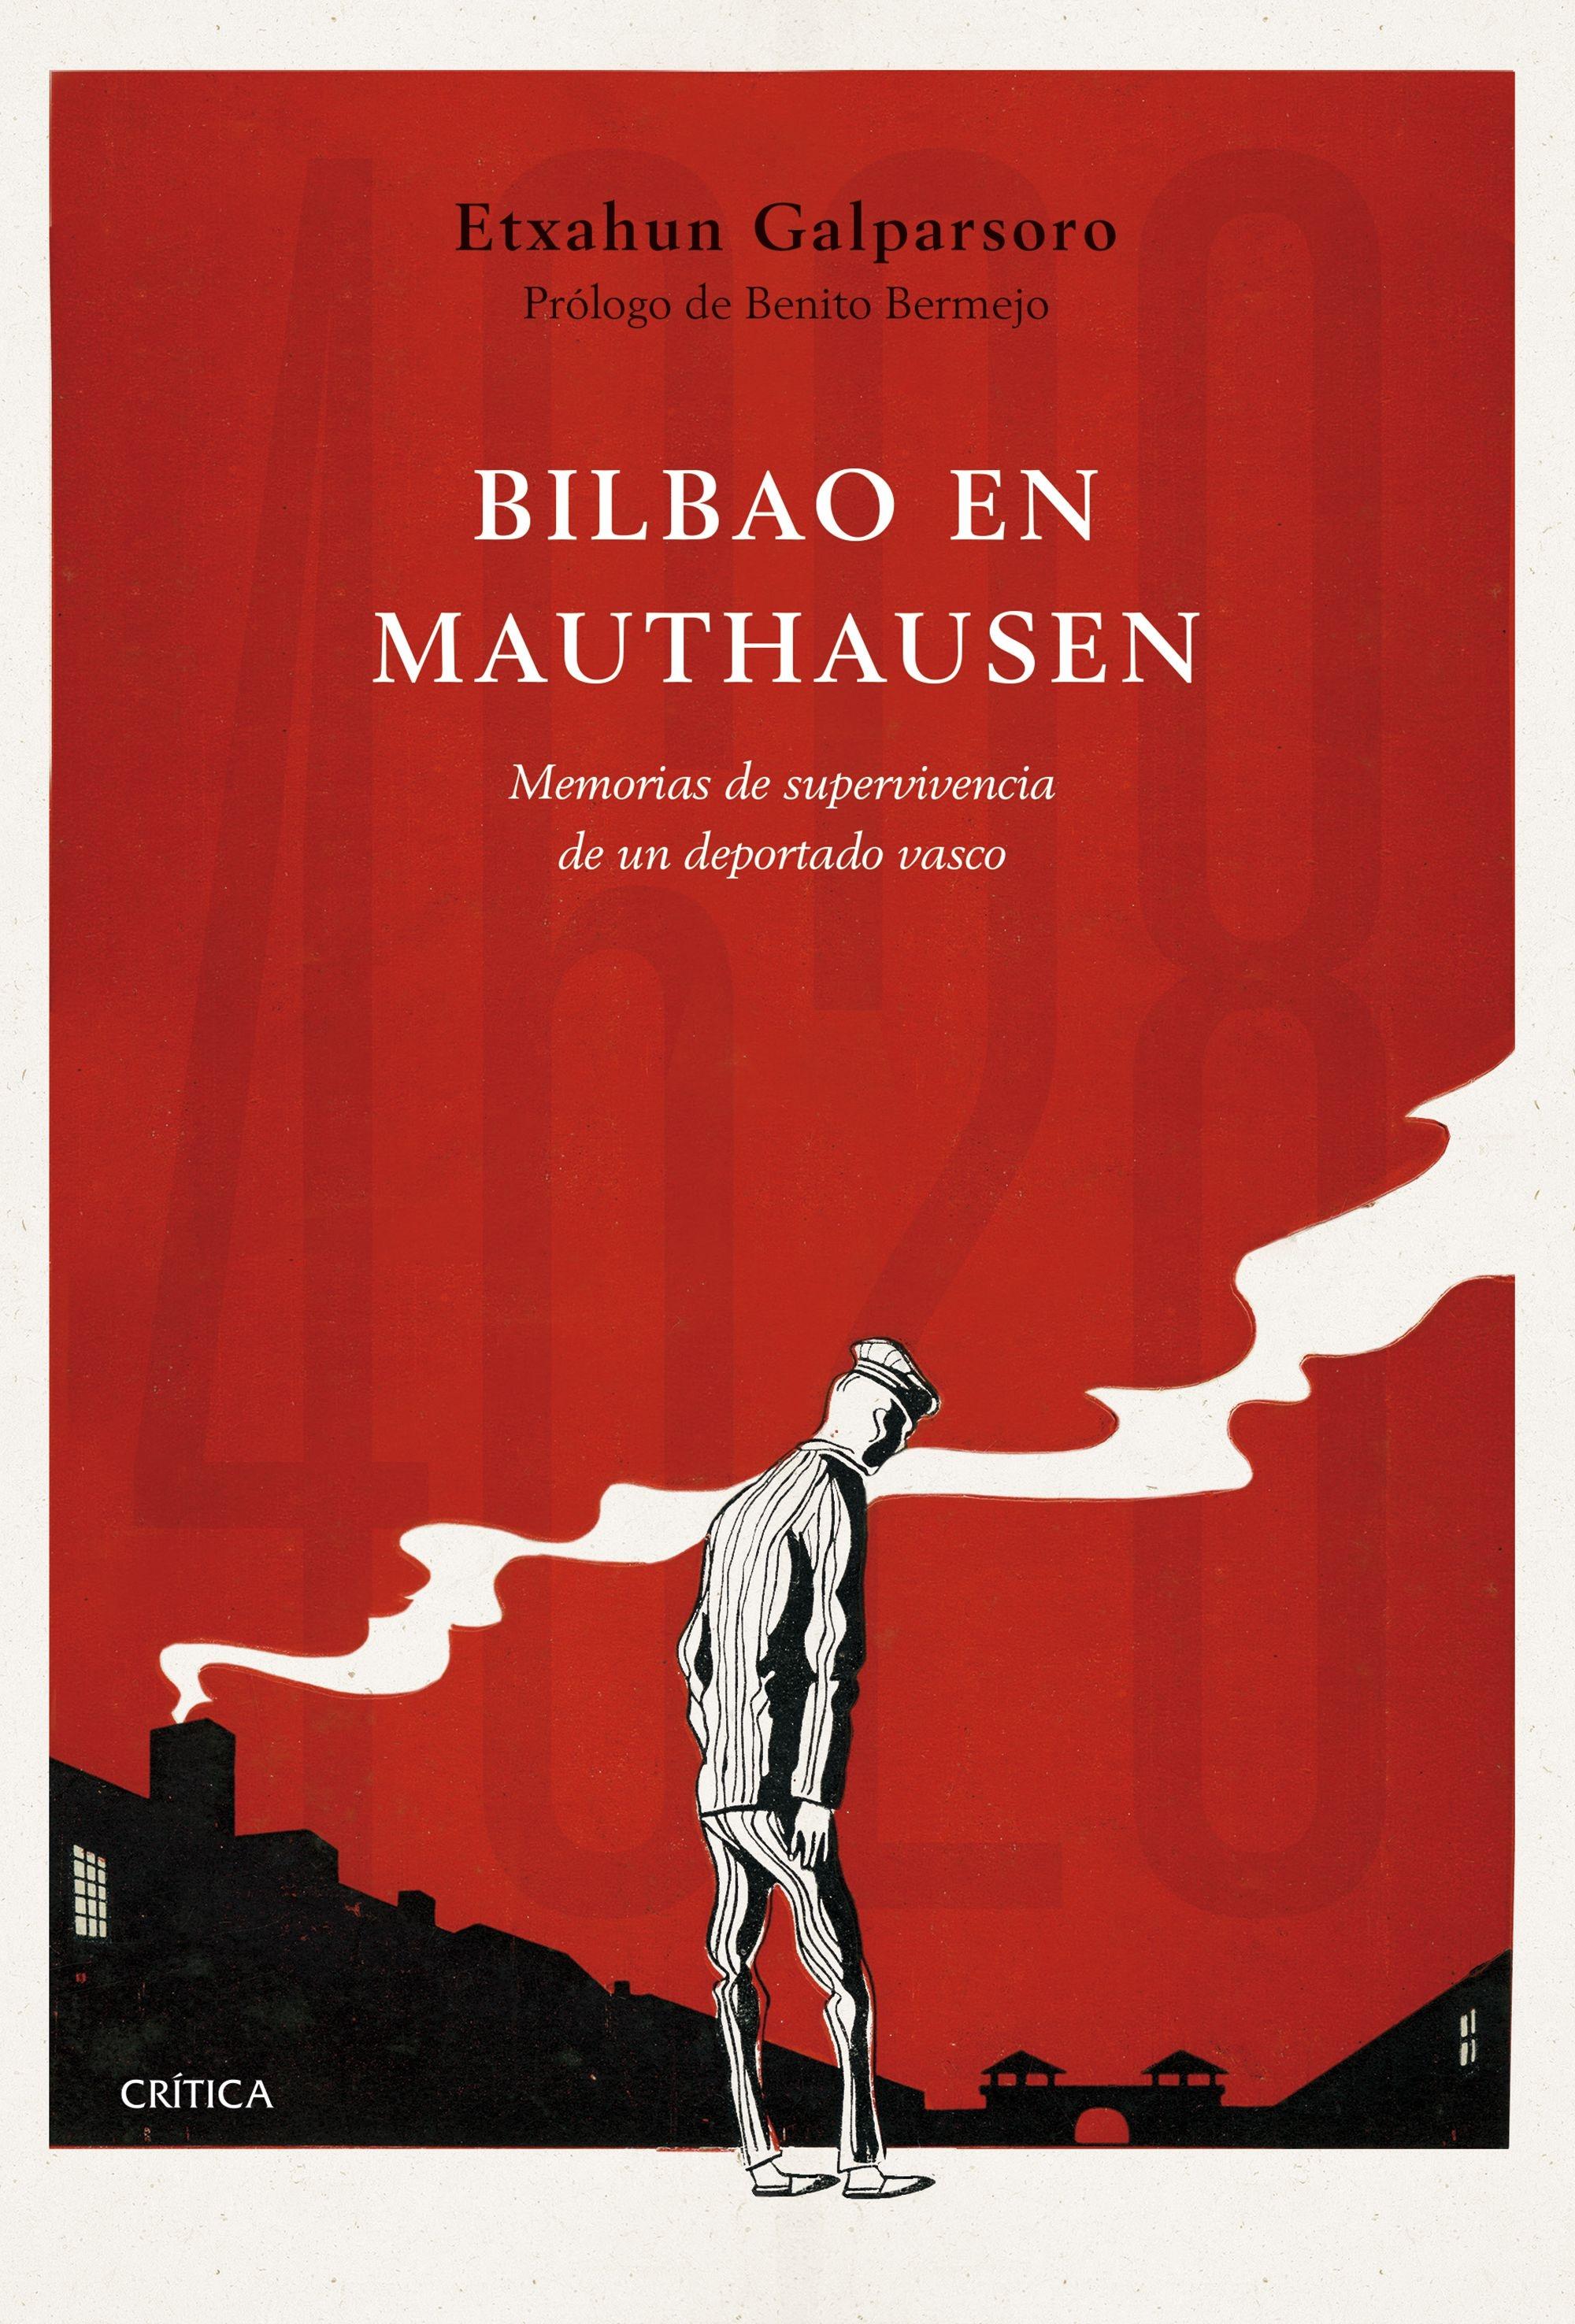 Bilbao en Mauthausen "Memorias de supervivencia de un deportado vasco". 